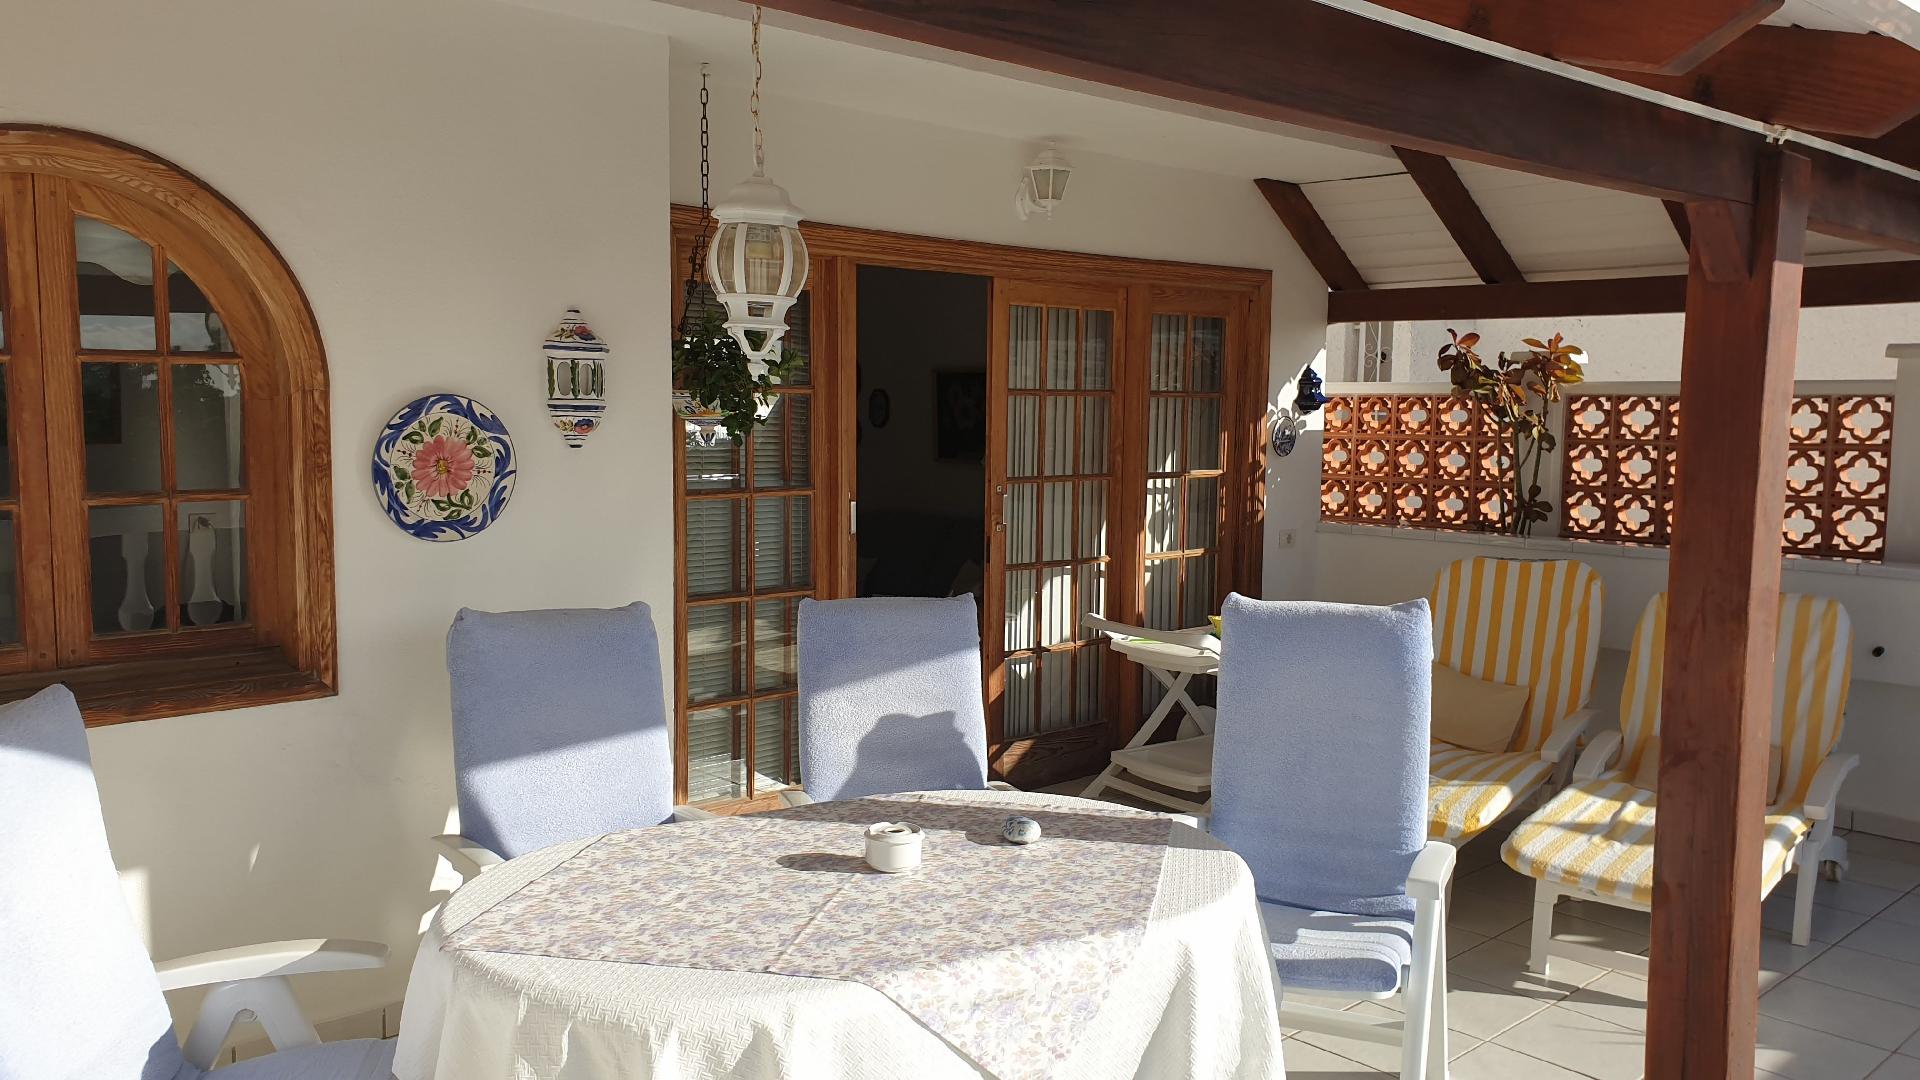 Ferienwohnung für 4 Personen ca. 120 m²  Ferienwohnung in Acantilado de Los Gigantes